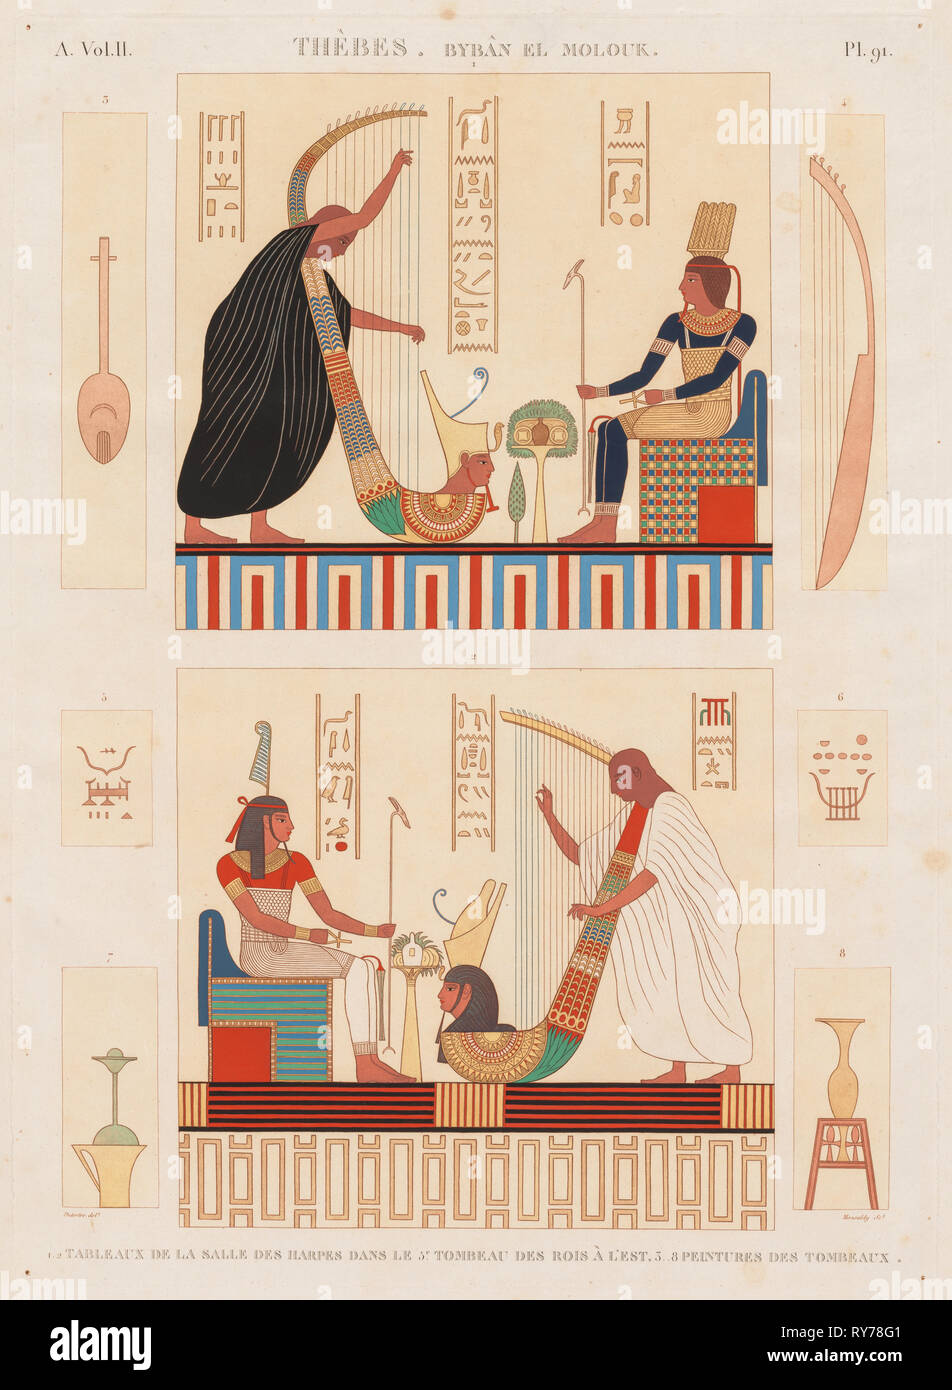 Descrizione dell'Egitto: Tebe Byban el Molouk, Vol. II, Pl. 91, 1812. Antoine Maxime Monsaldy (Francese, 1768-1816), dopo André Dutertre (Francese, 1753-1842). Incisione, stampato in sanguine colorate a mano; foglio: 71 x 53,9 cm (27 15/16 x 21 1/4 in.); platemark: 58,5 x 42,5 cm (23 1/16 x 16 3/4 in Foto Stock